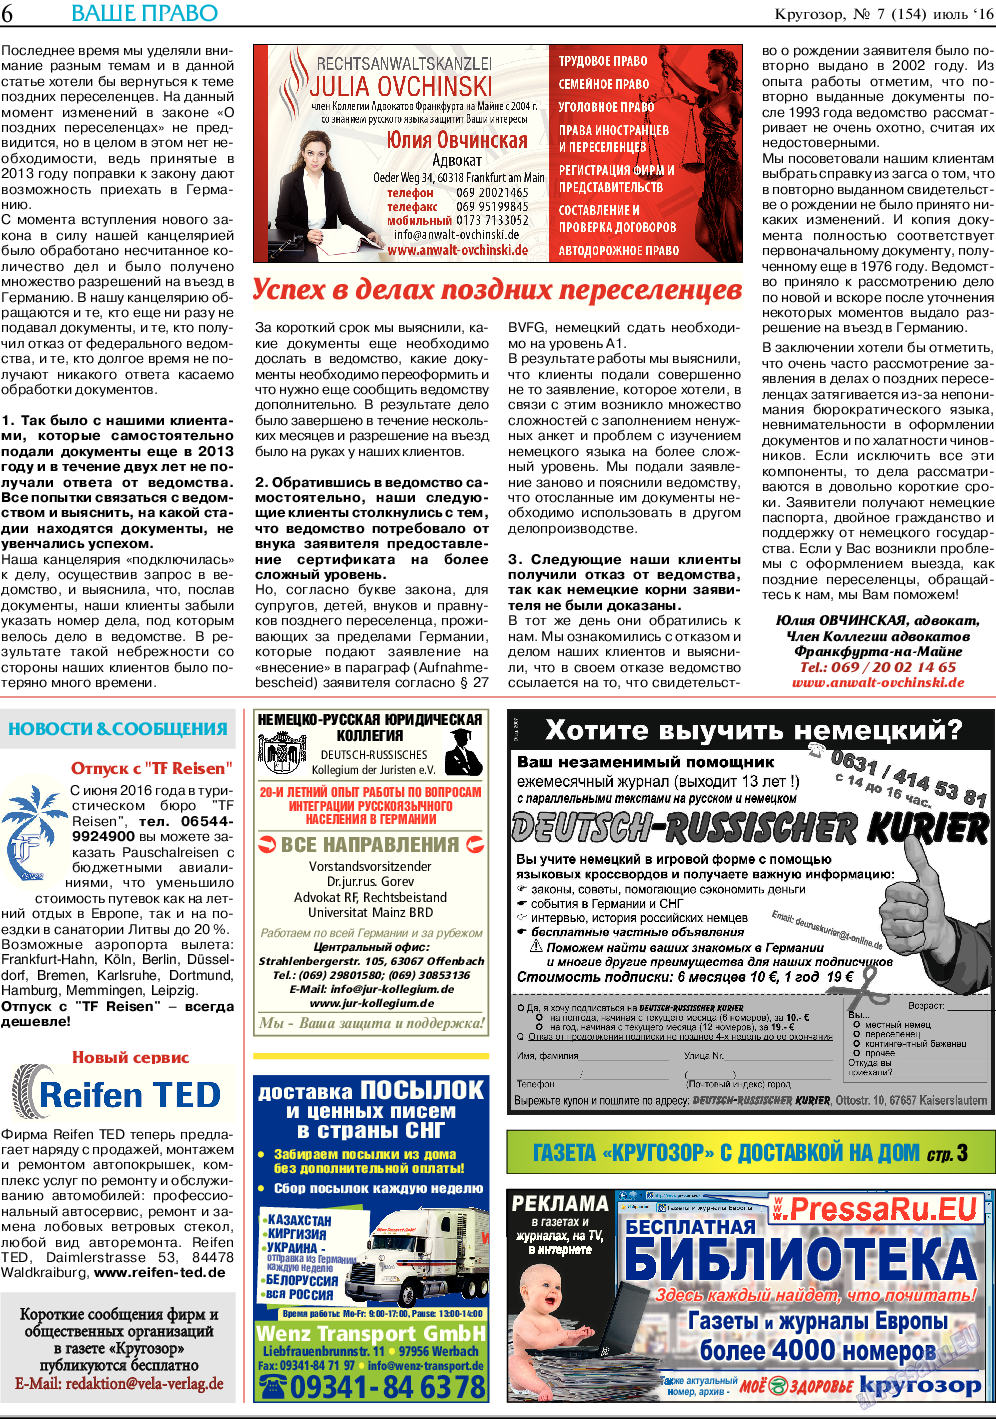 Кругозор, газета. 2016 №7 стр.6